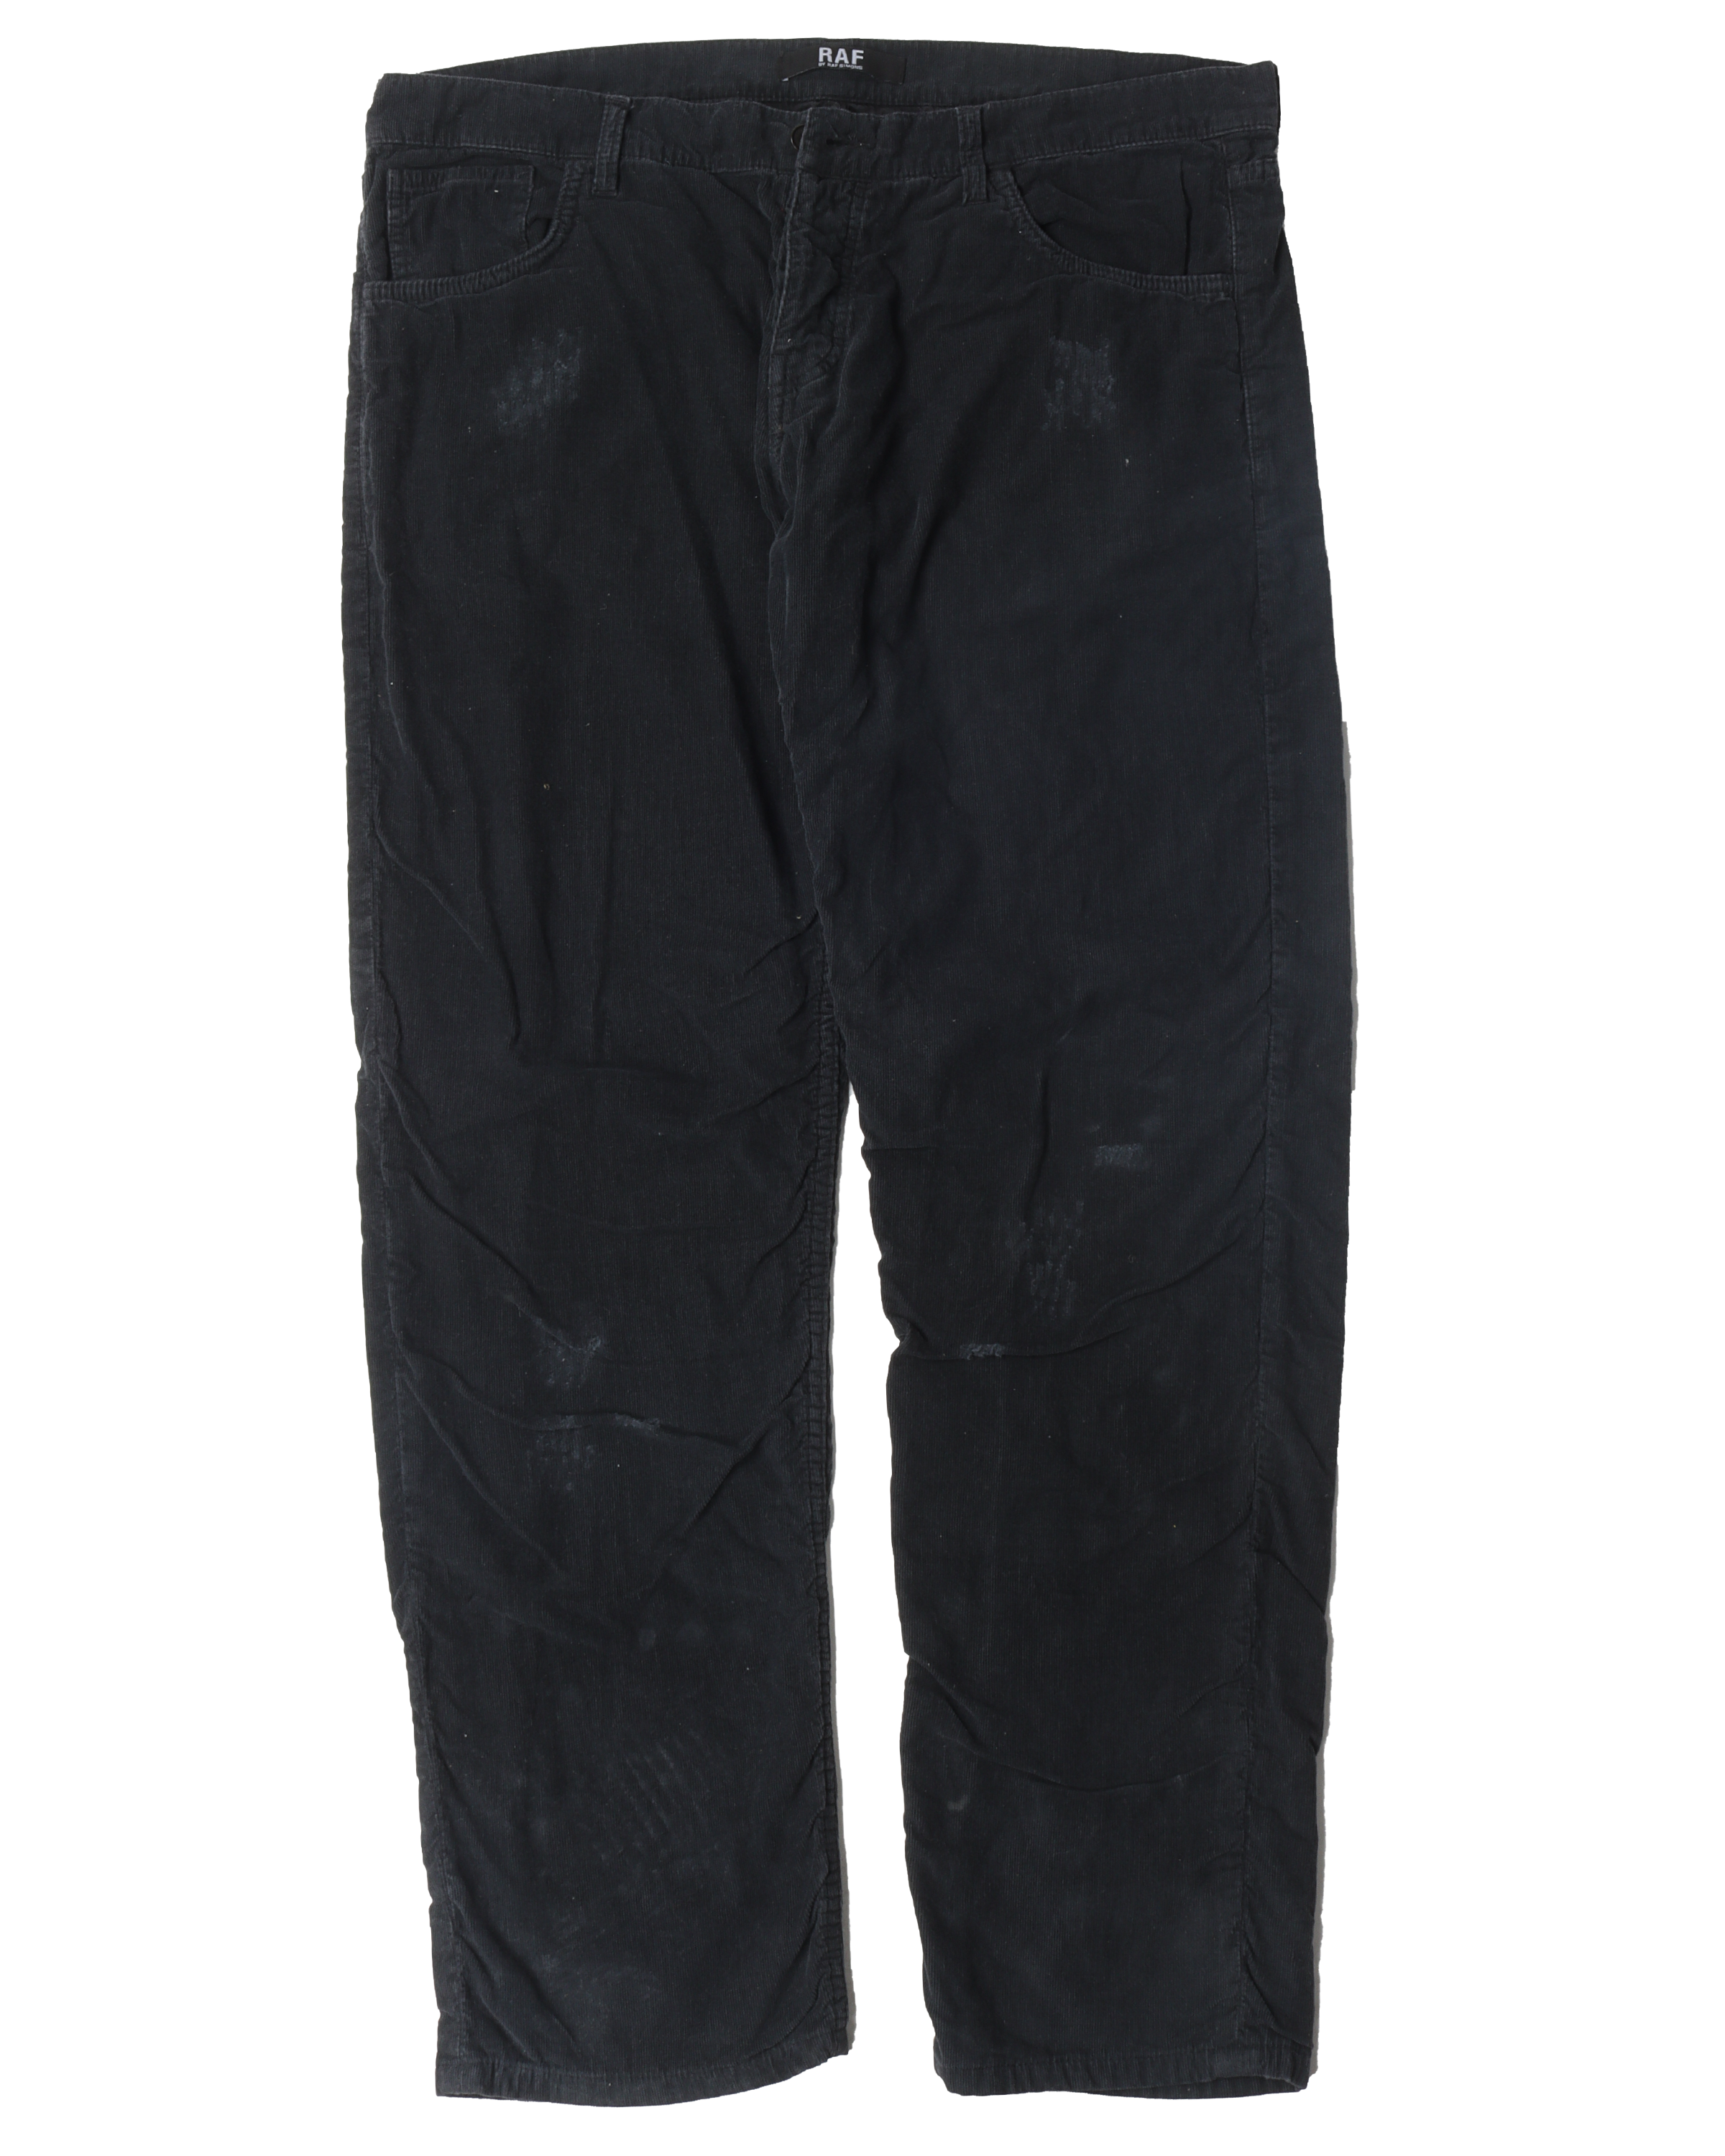 Distressed/Wrinkled Corduroy Pants